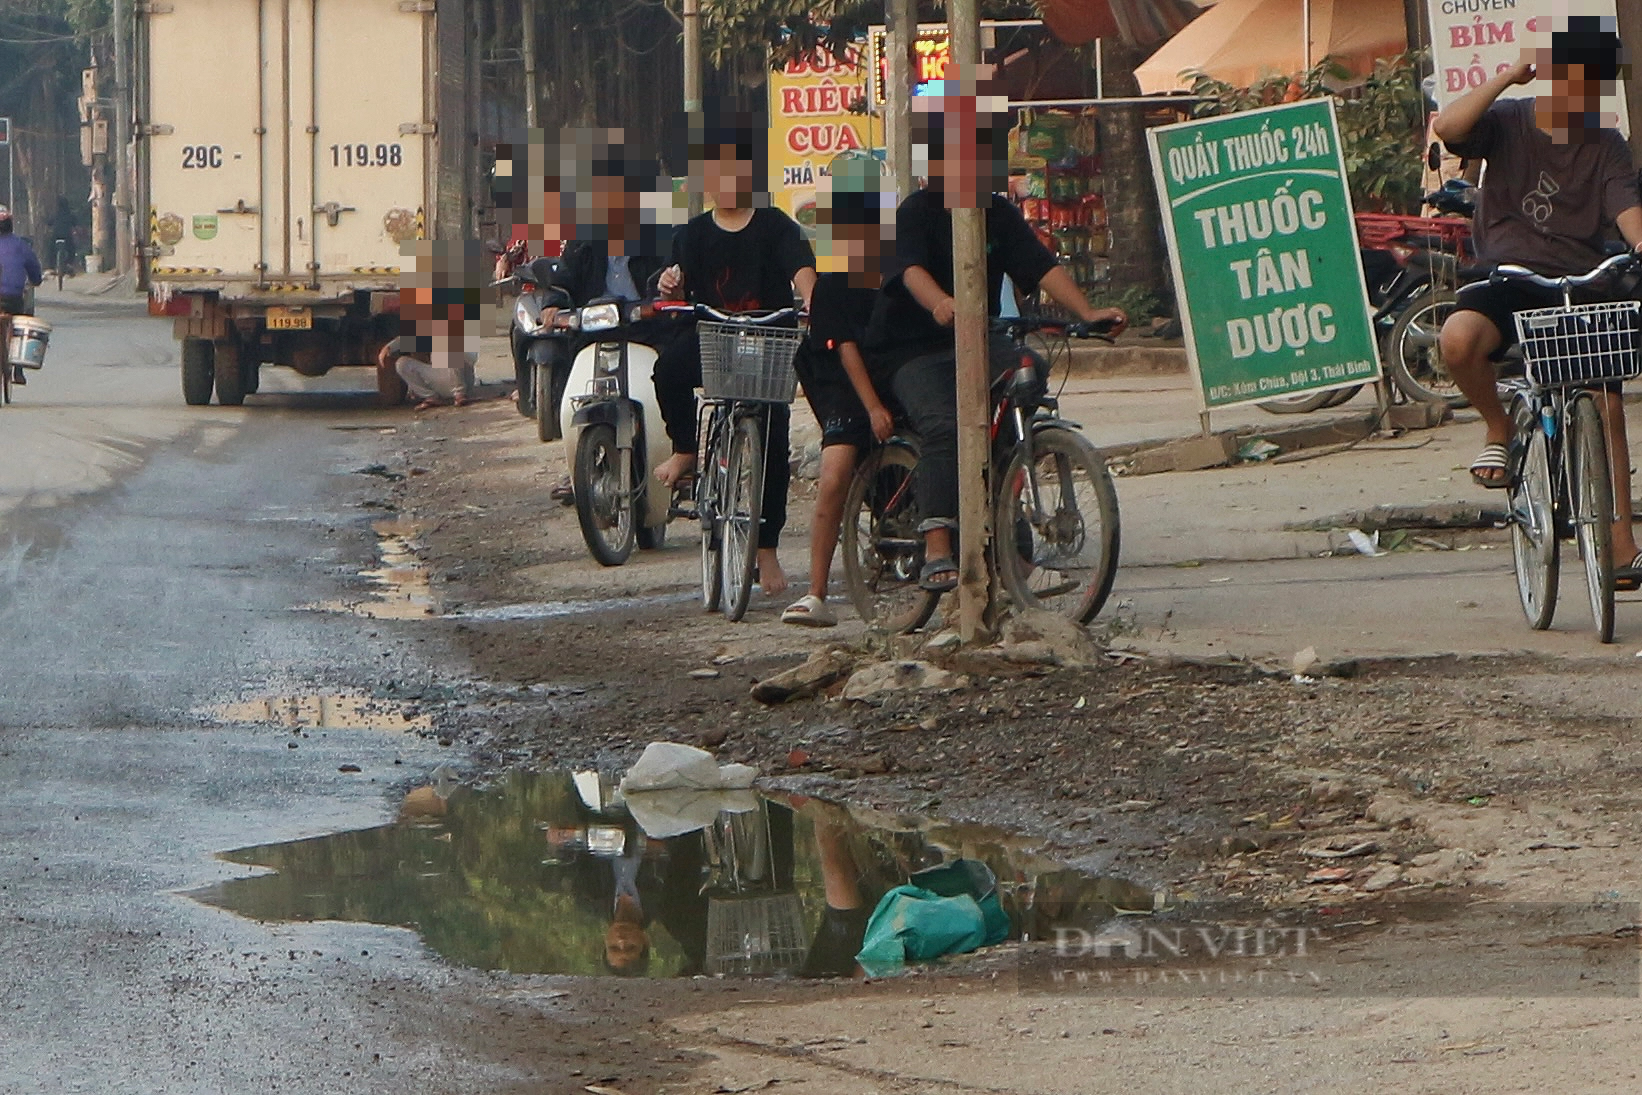 Hà Nội: Quốc lộ 21B xuống cấp, người dân tràn ra đường bán hàng - Ảnh 2.